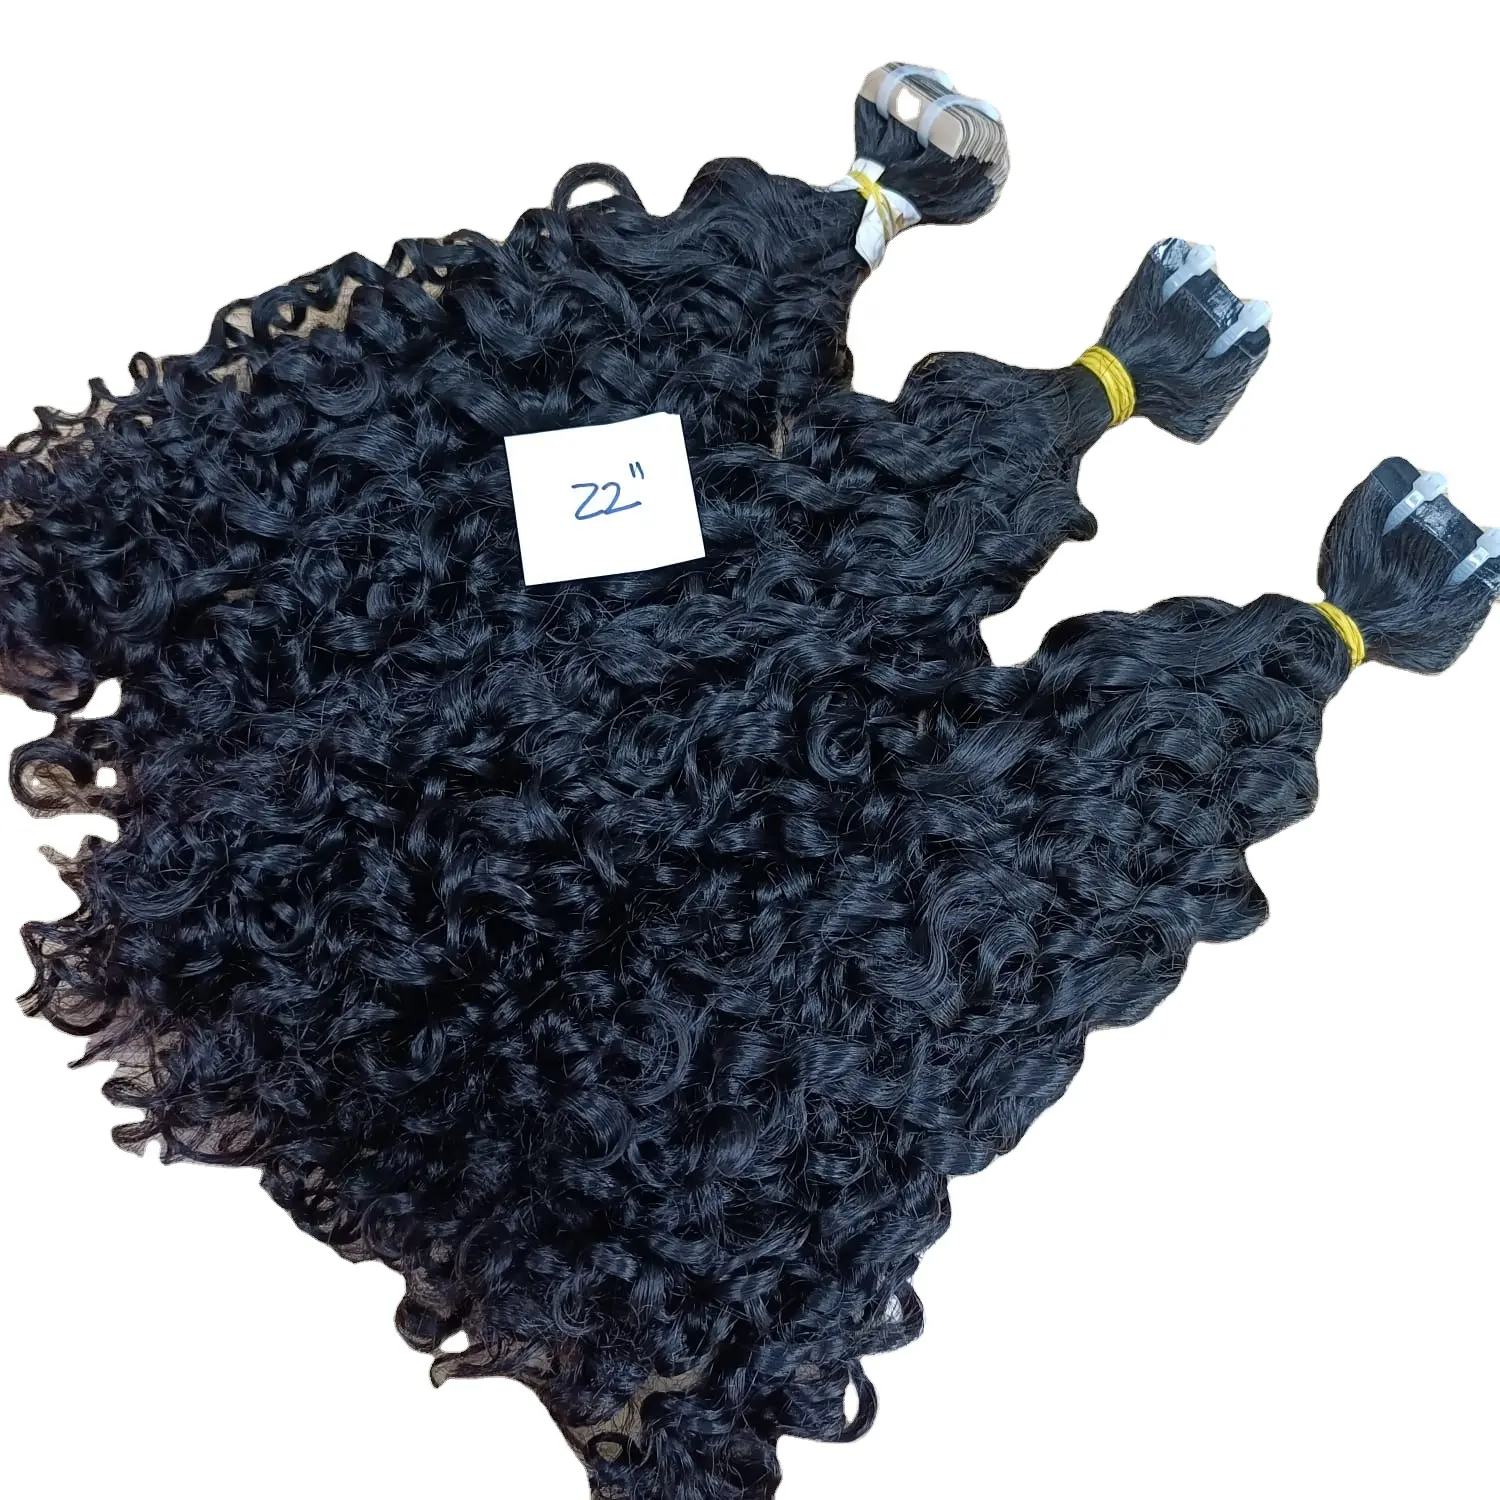 Estensioni dei capelli con nastro adesivo pixie curly texture colori alla moda acconciature e lunghezze personalizzate fornitore all'ingrosso di capelli grezzi vietnamiti